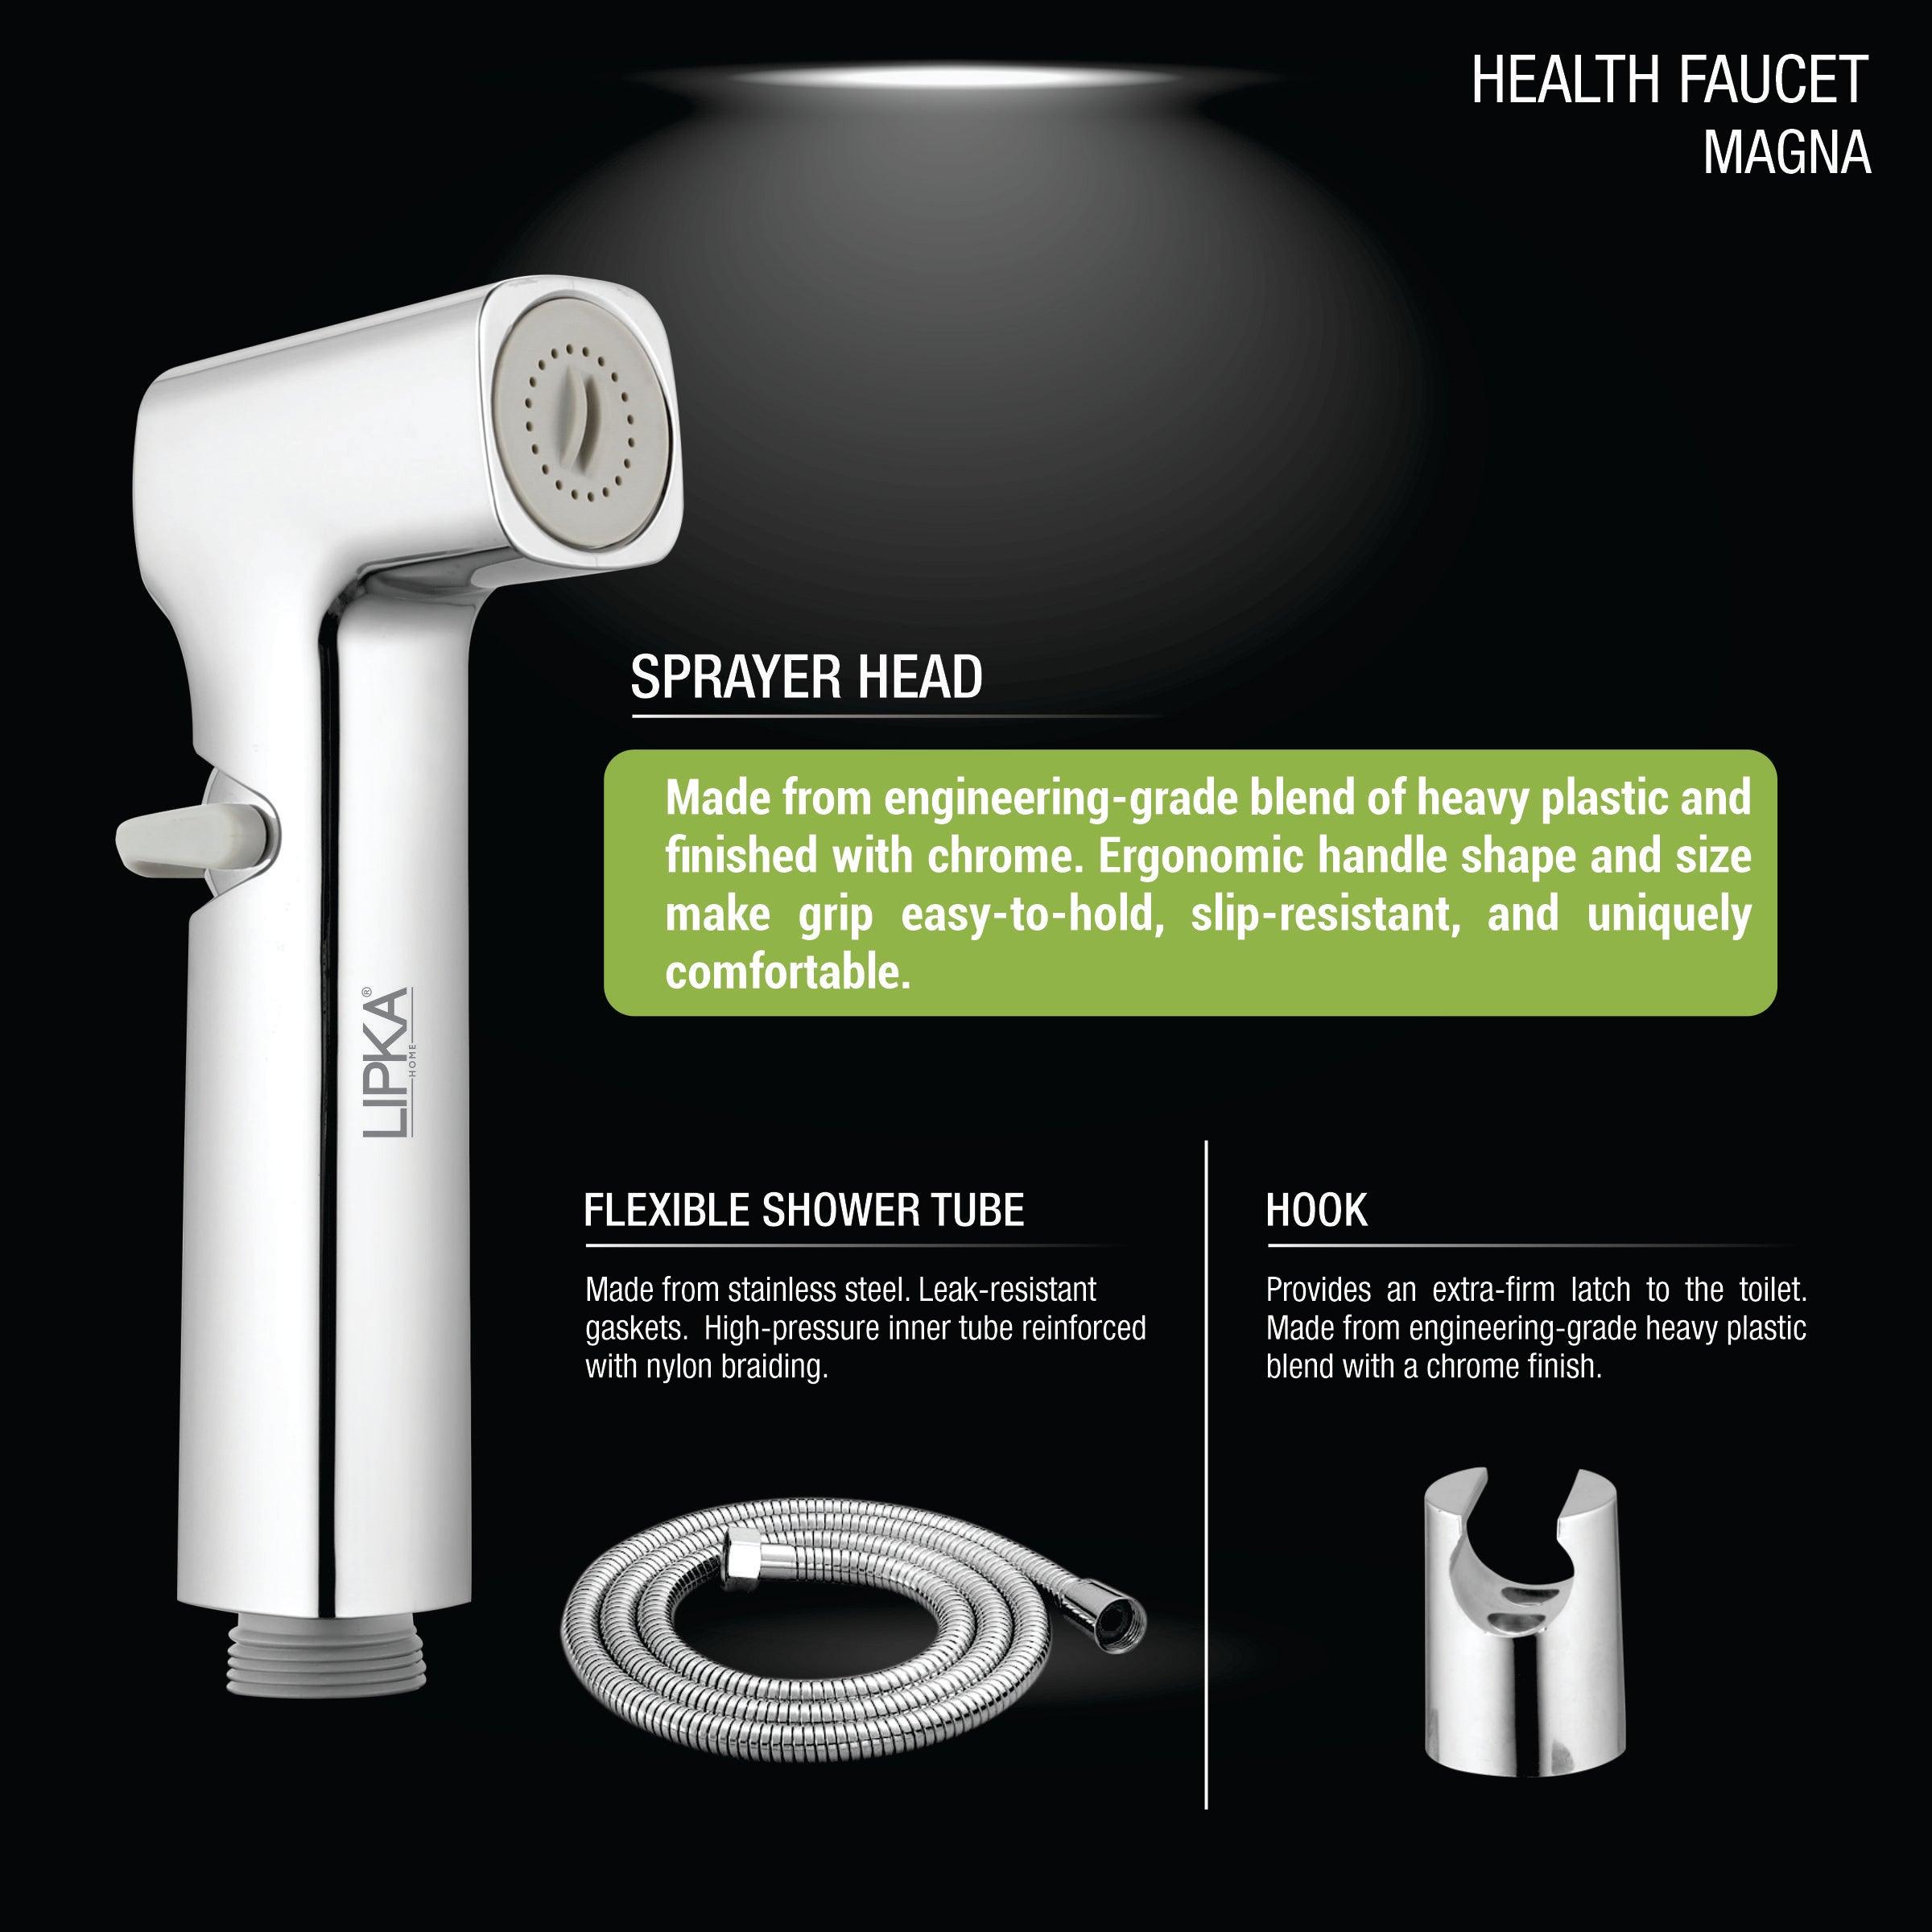 Magna Health Faucet (Complete Set) product description